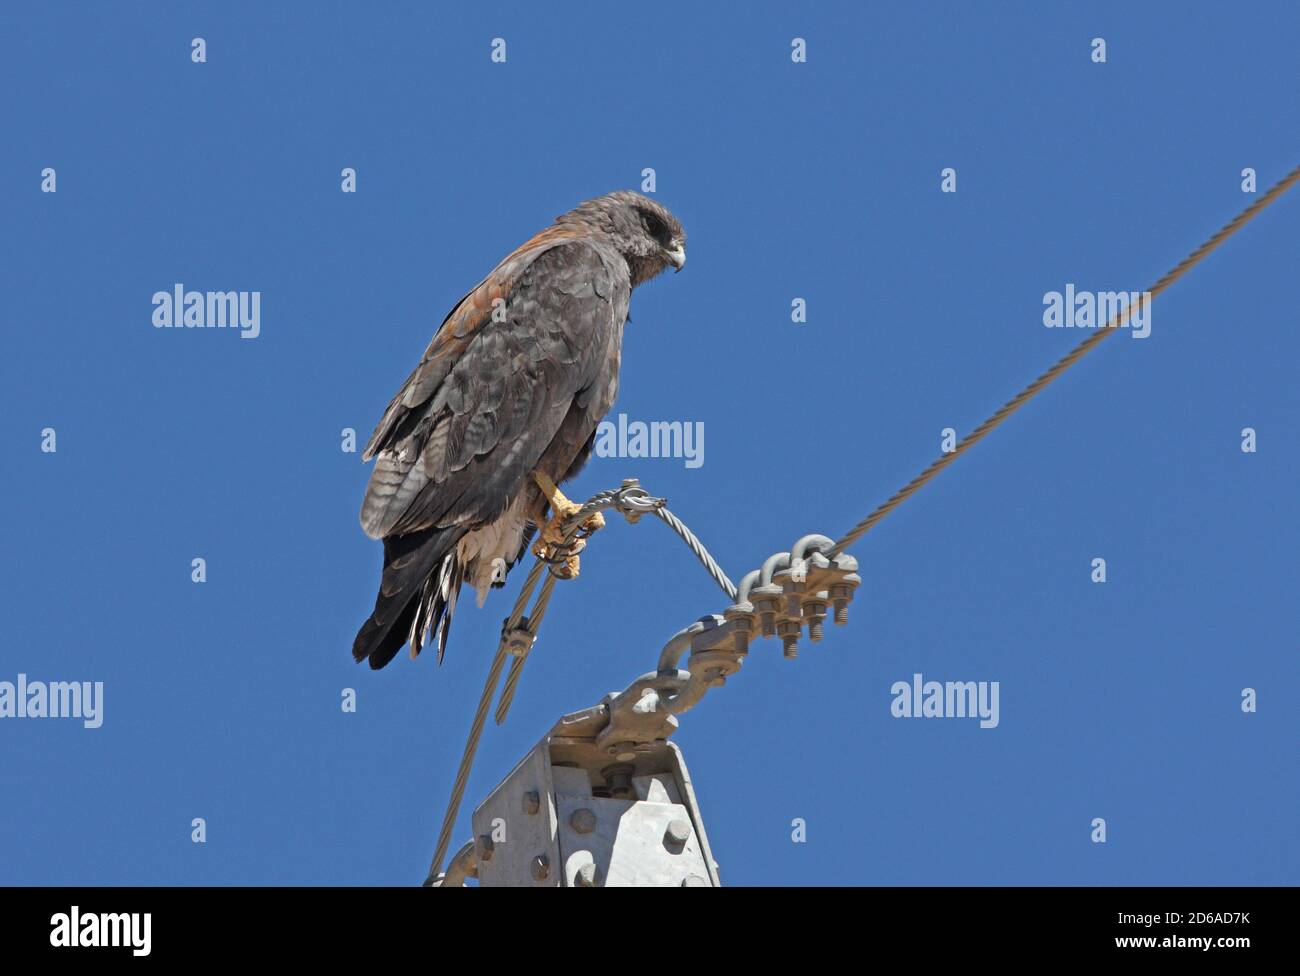 Puna Hawk (Buteo poecilochrous) adulte mâle perché sur la ligne électrique Jujuy, Argentine Janvier Banque D'Images